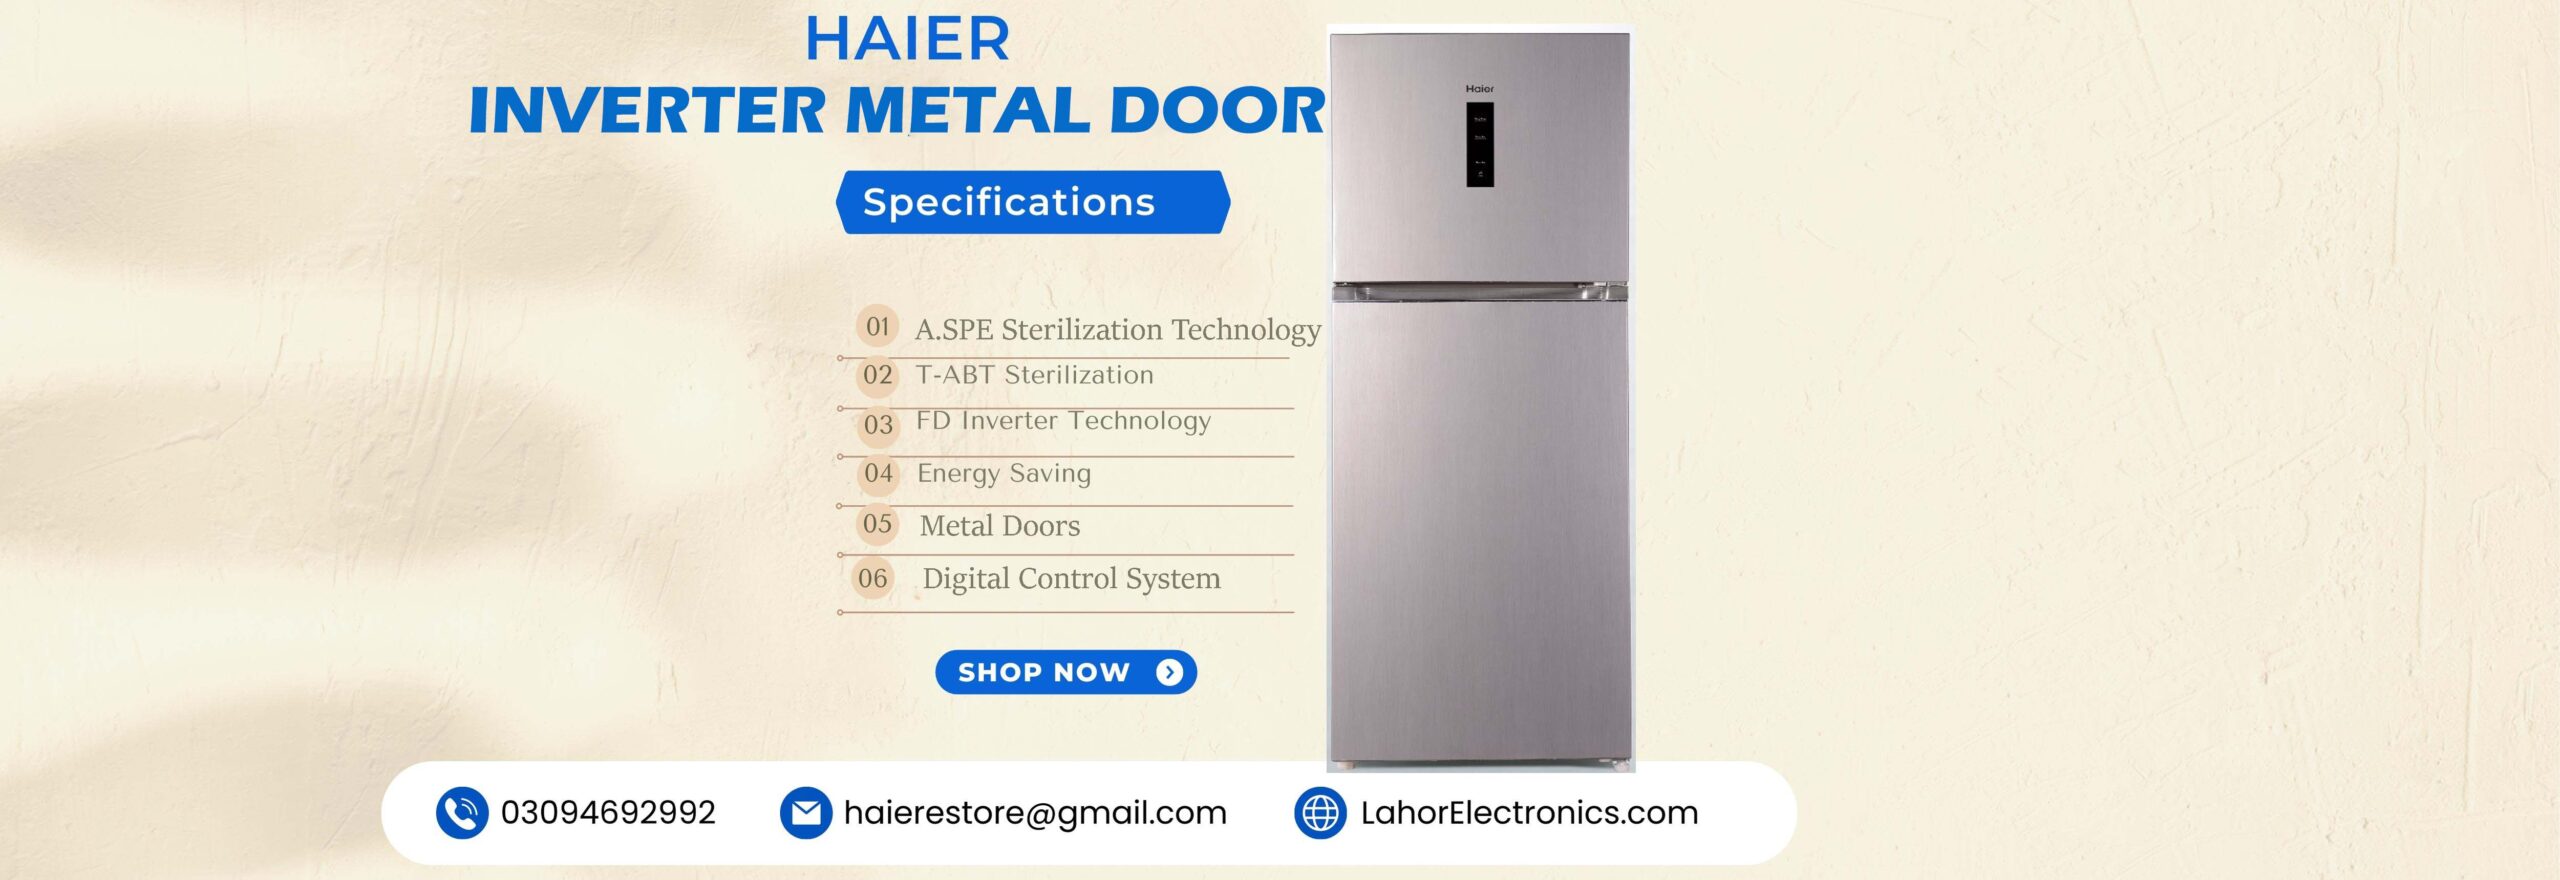 Haier Inverter Metal Door